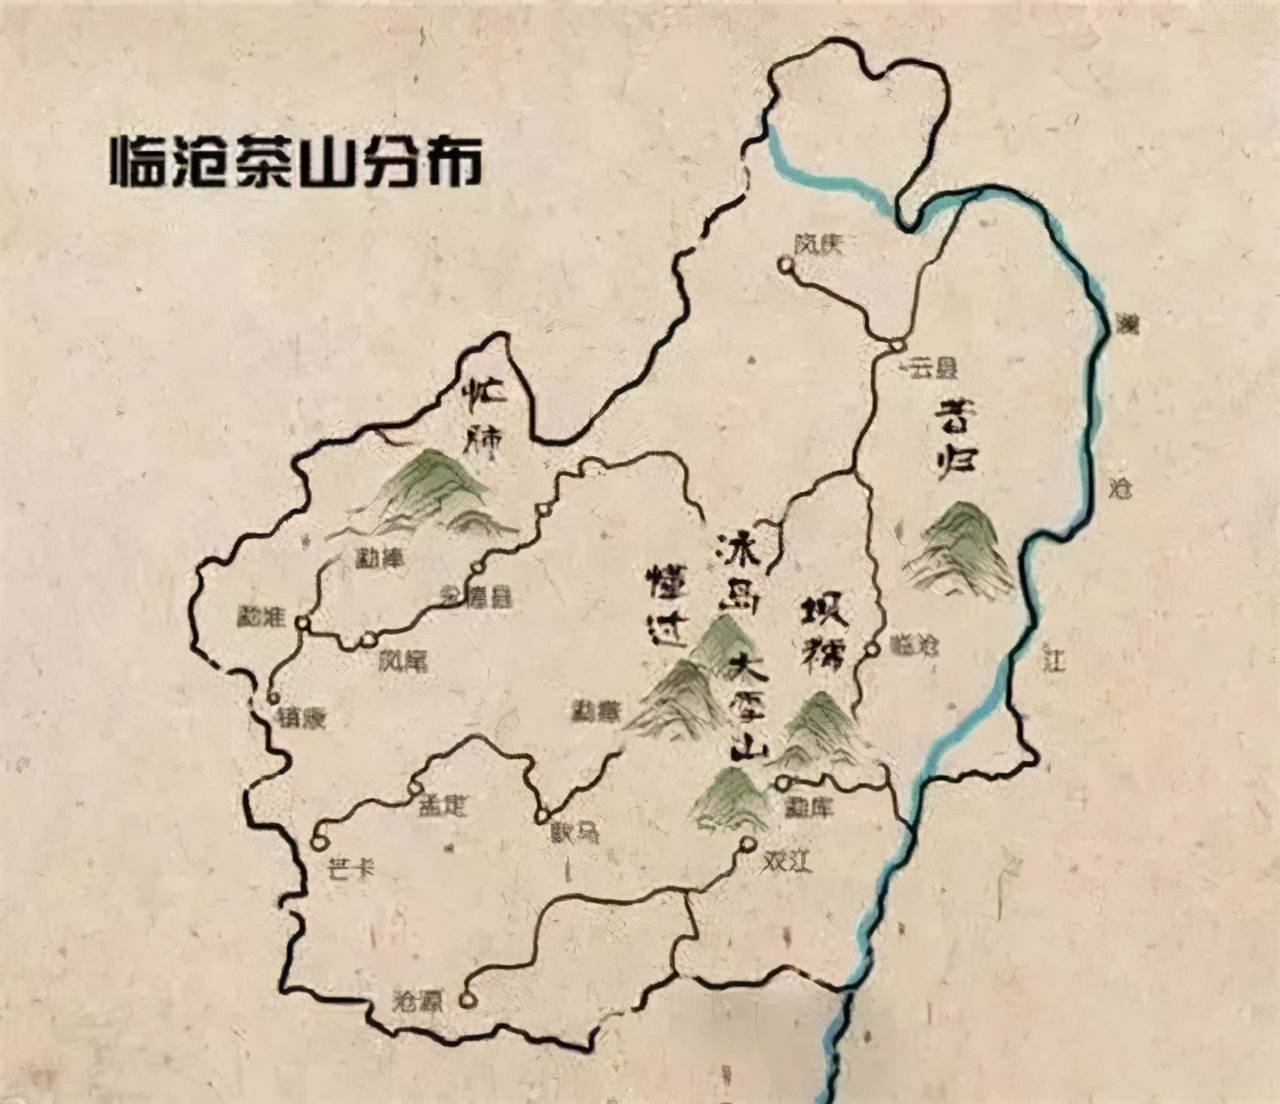 临沧产茶区域主要集中在沧源,双江,凤庆,云县等地,其中享誉世界的万